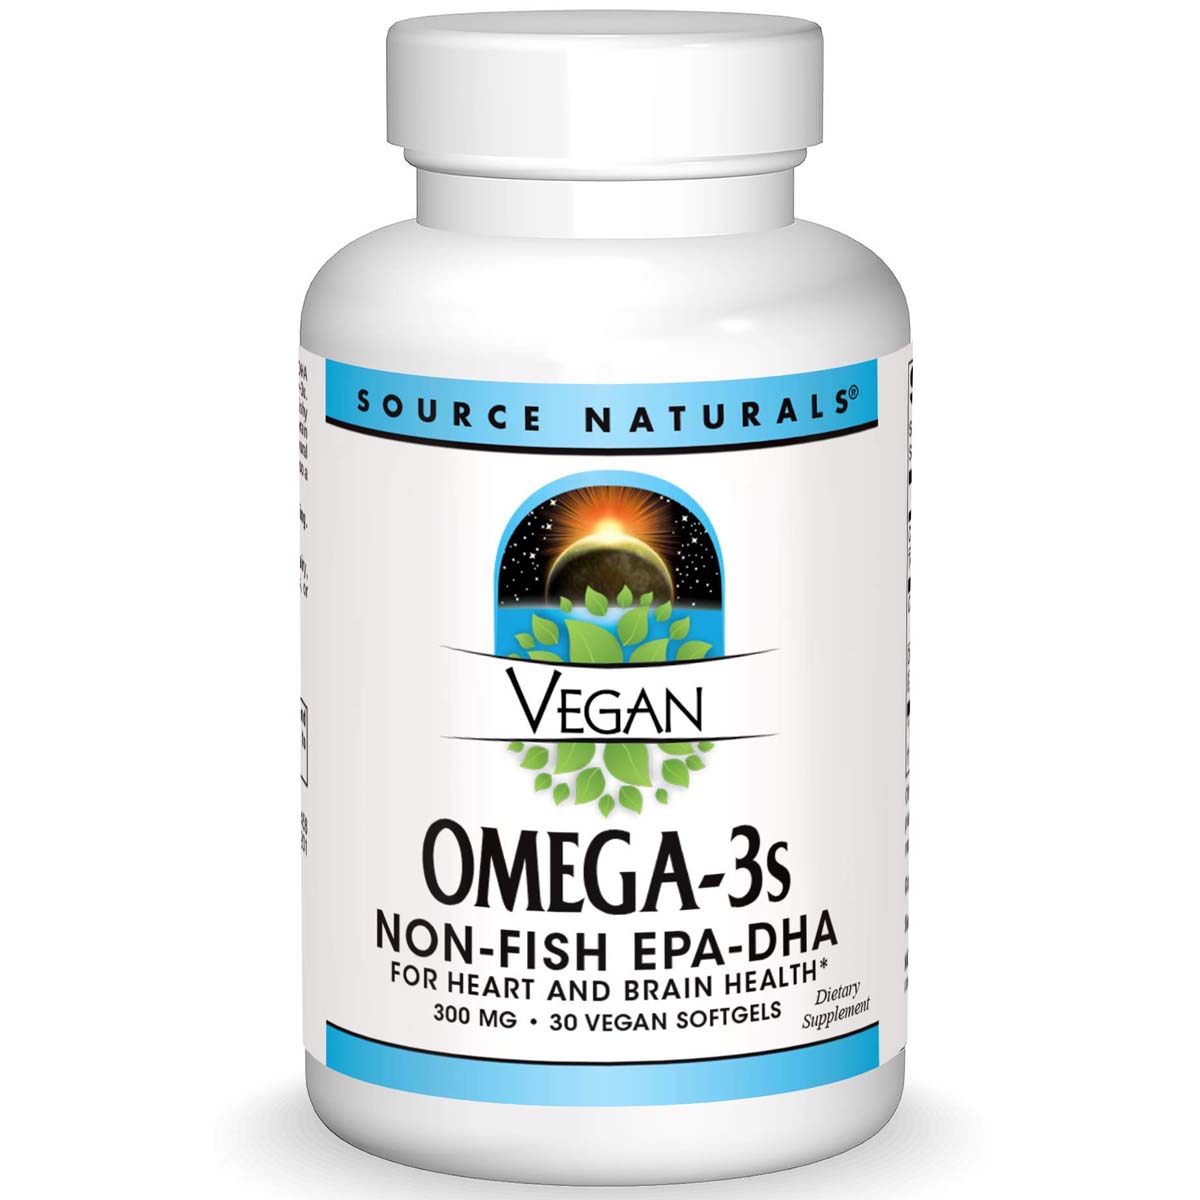 Source Naturals Vegan Omega-3 Non-Fish 30 Vegan Softgels 300 mg